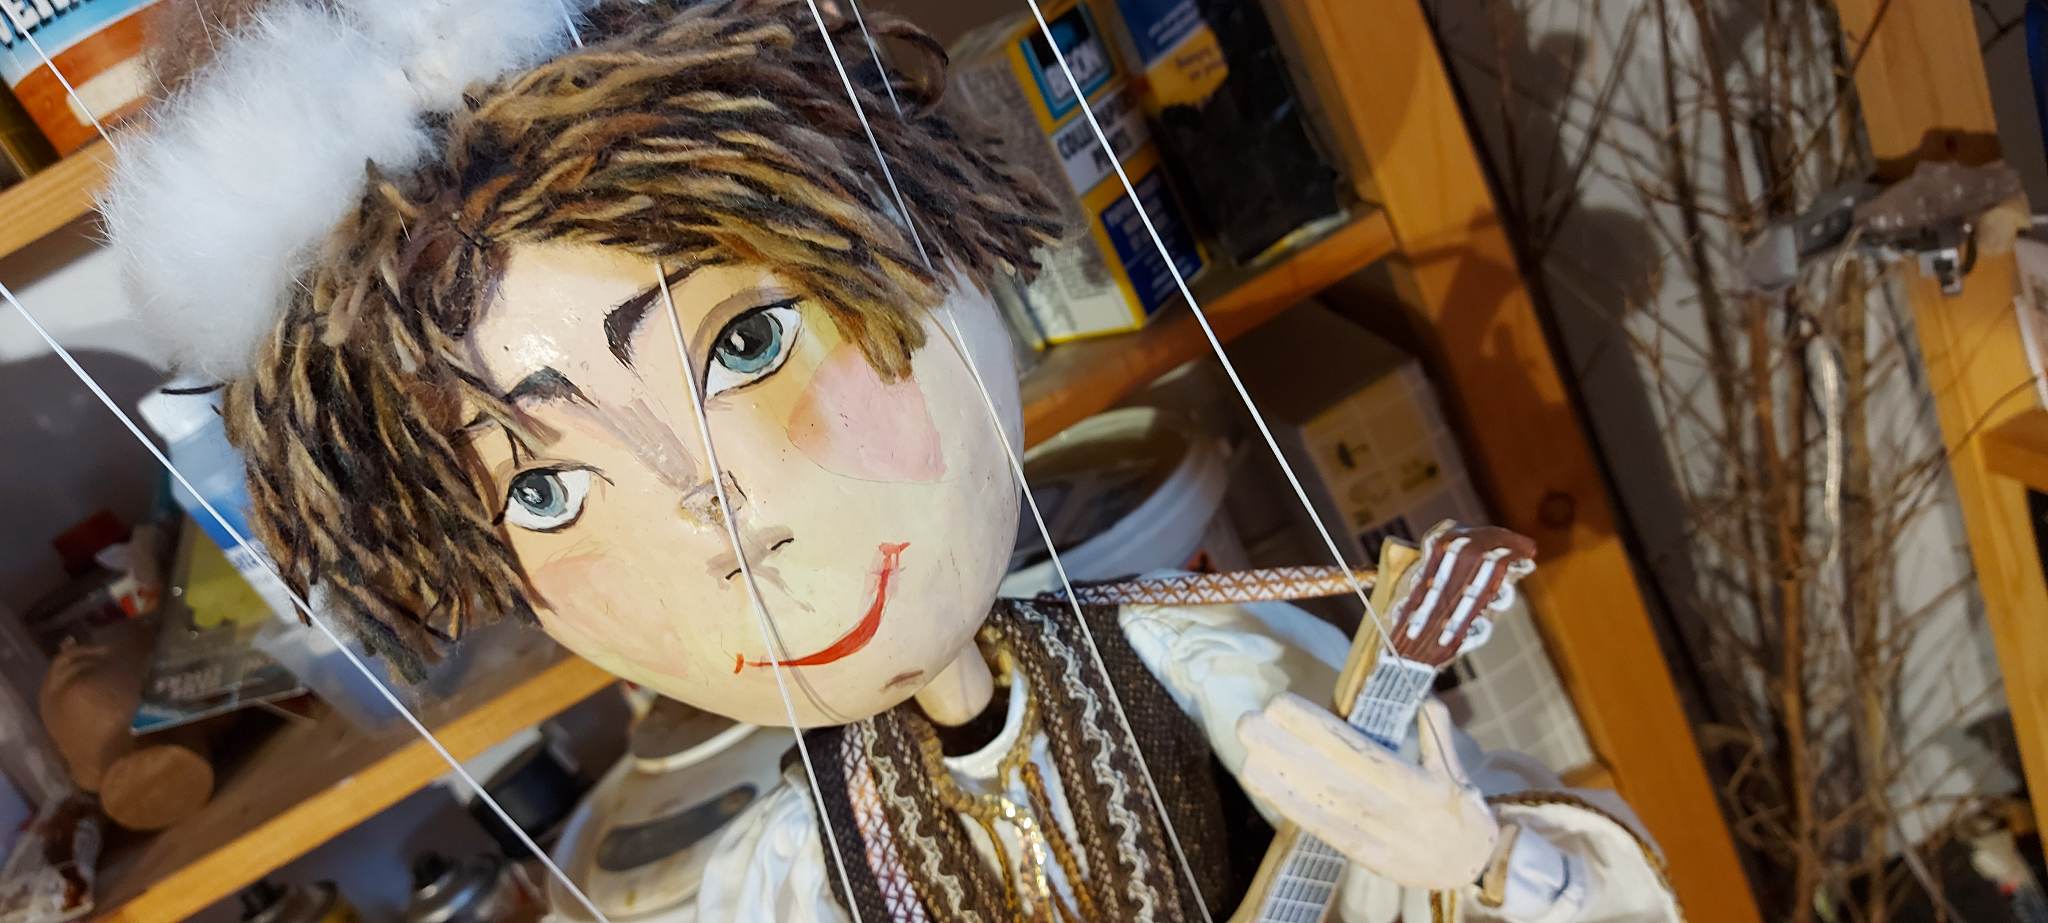 Restauration de la collection de marionnettes de la maison culturelle belgo-roumaine Arthis